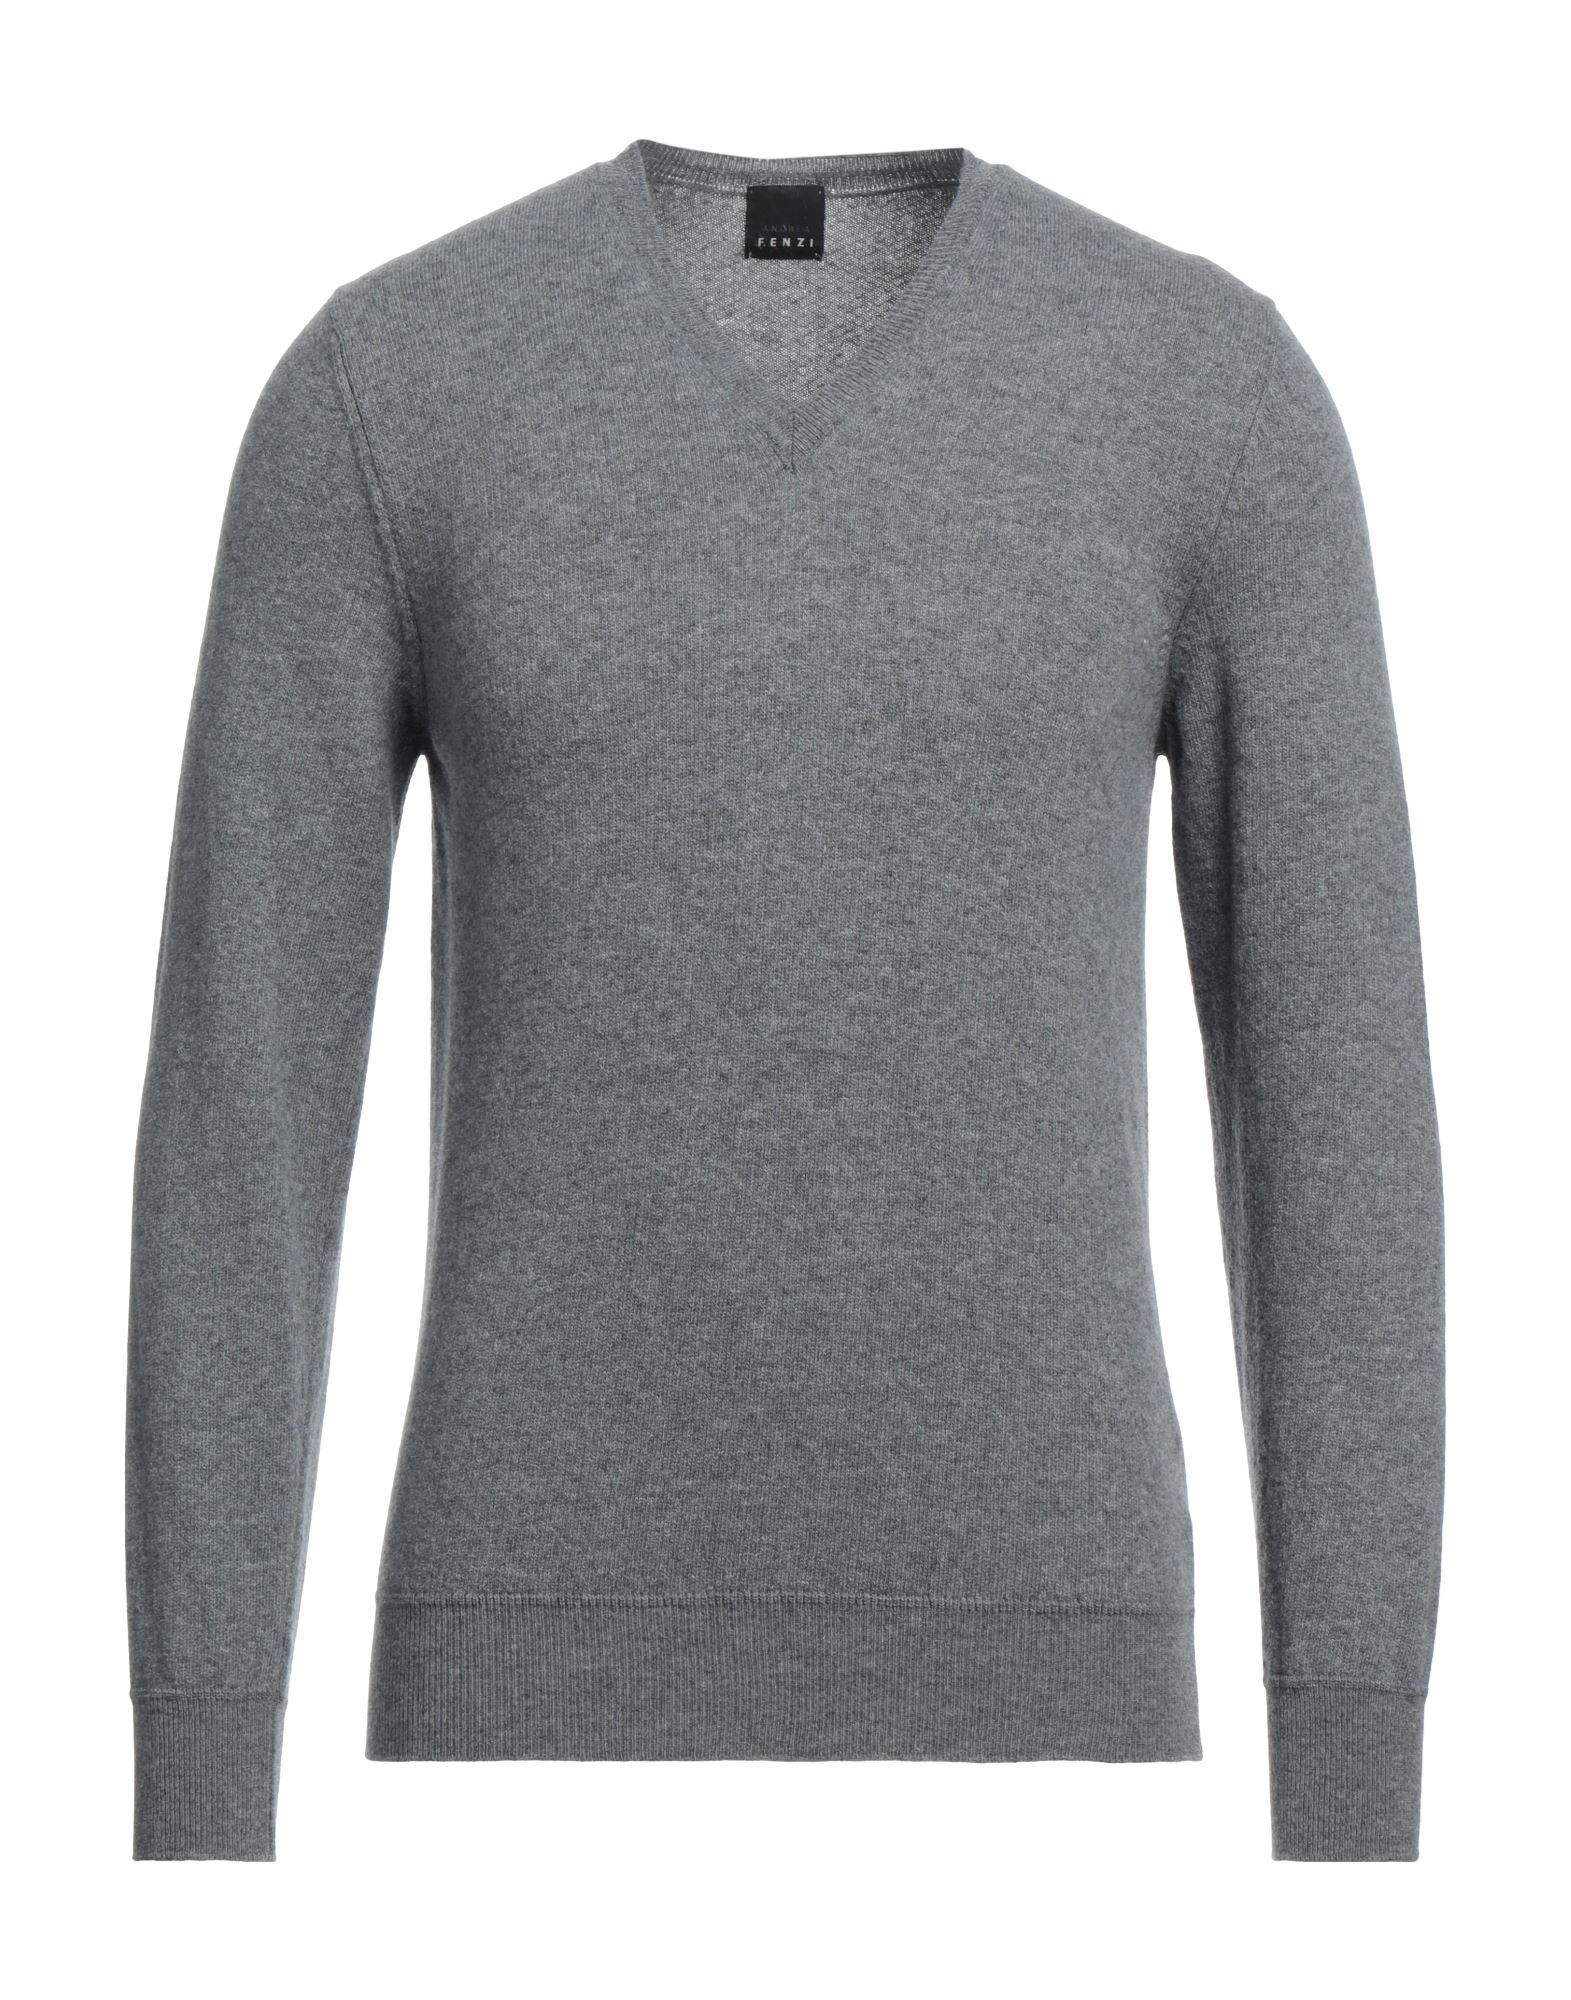 Shop Andrea Fenzi Man Sweater Grey Size 46 Geelong Wool